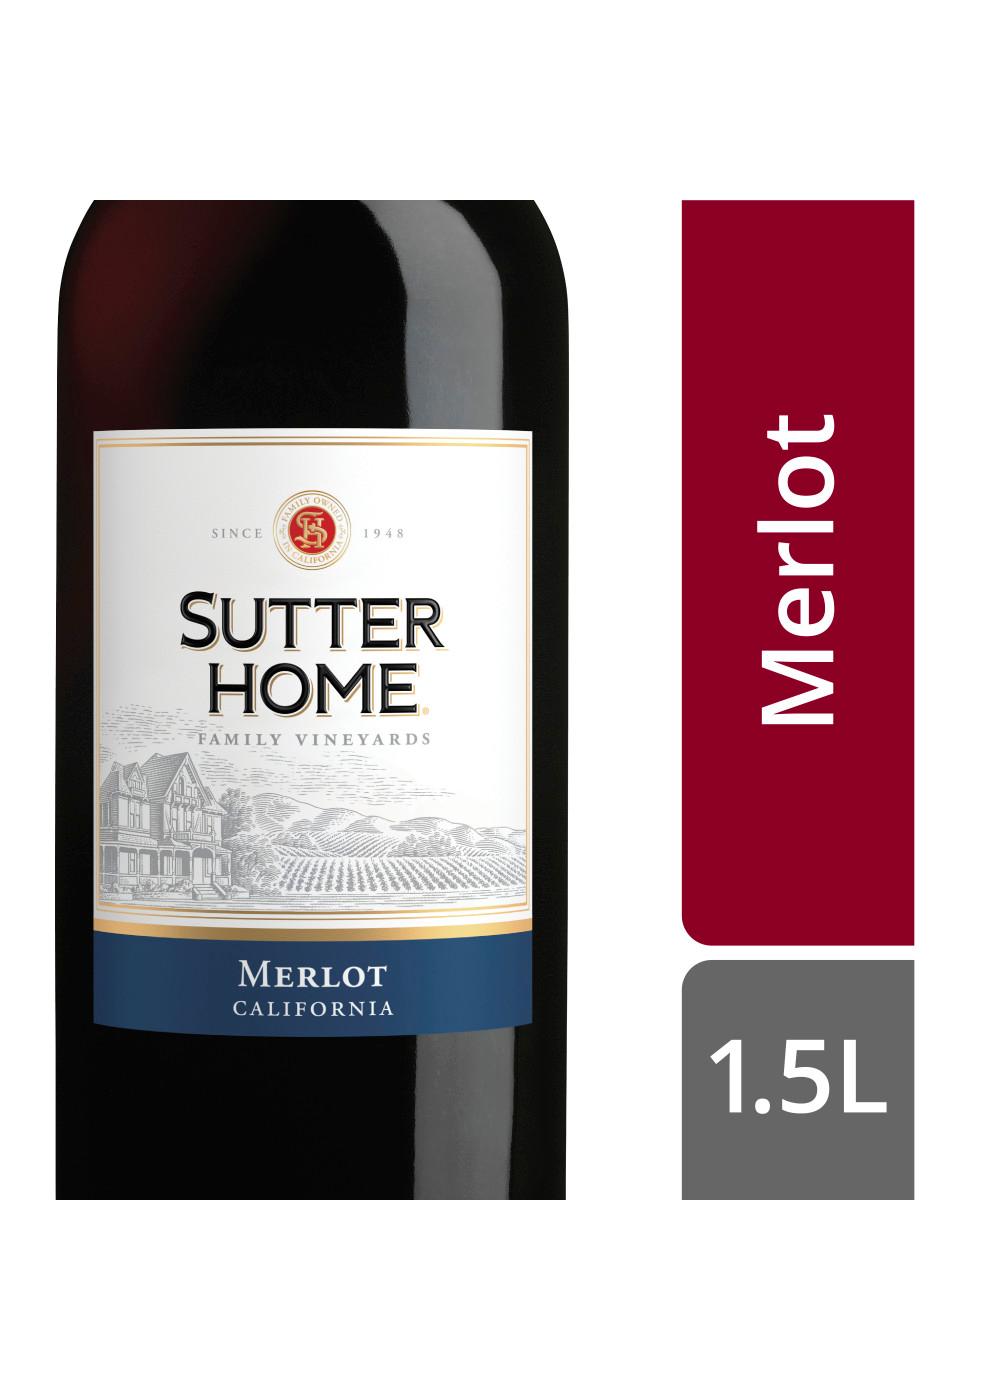 Sutter Home Family Vineyards Merlot Wine; image 2 of 5